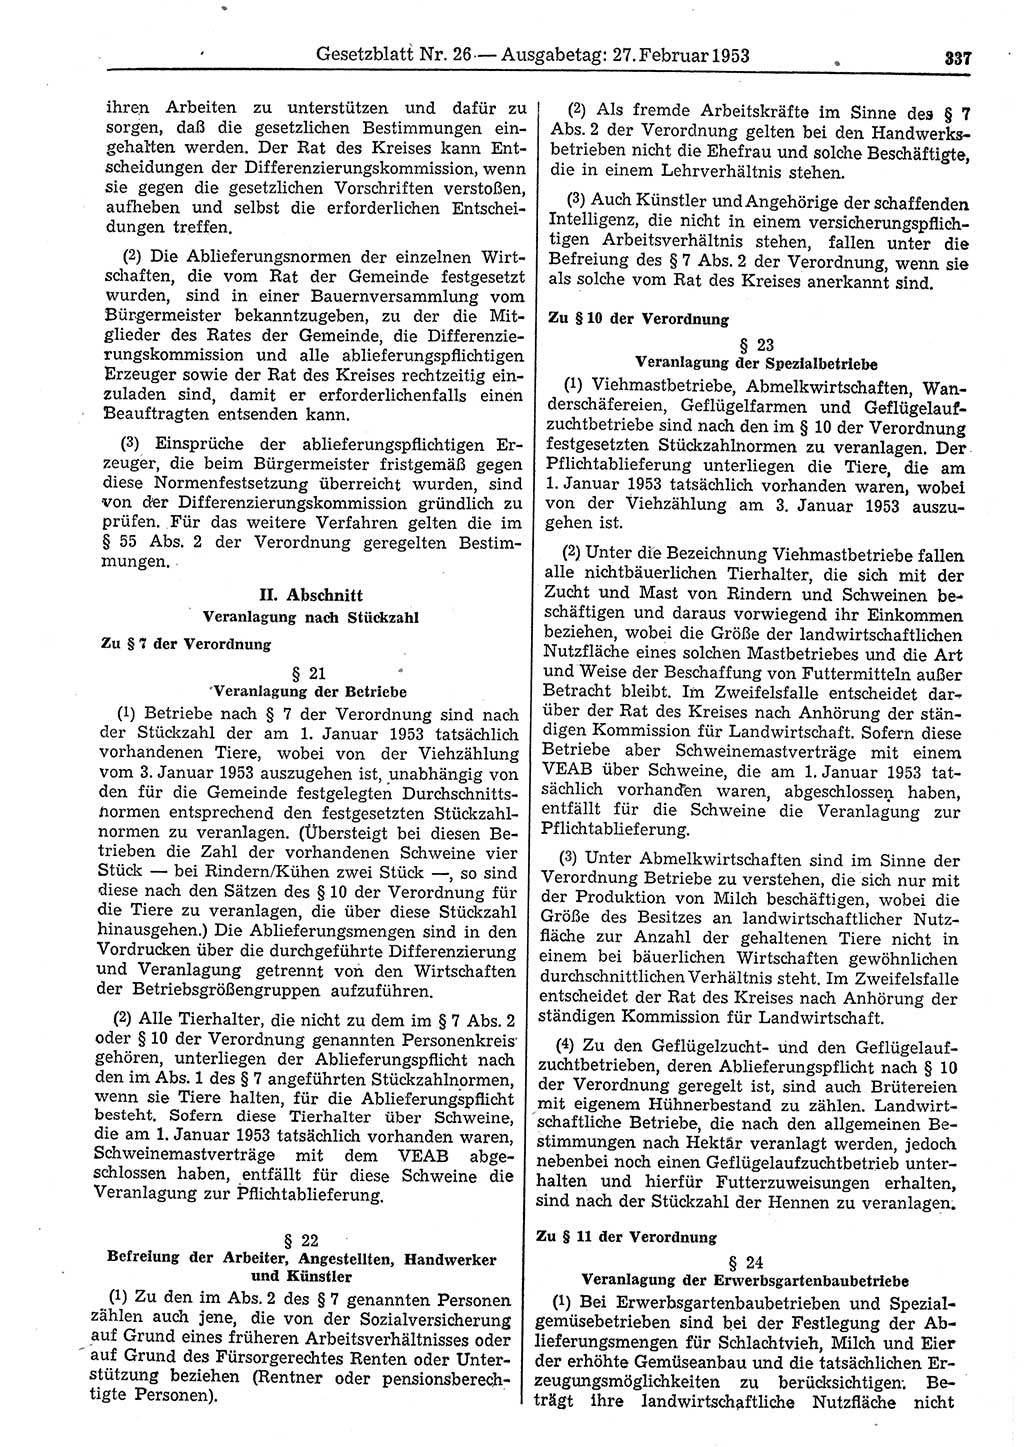 Gesetzblatt (GBl.) der Deutschen Demokratischen Republik (DDR) 1953, Seite 337 (GBl. DDR 1953, S. 337)